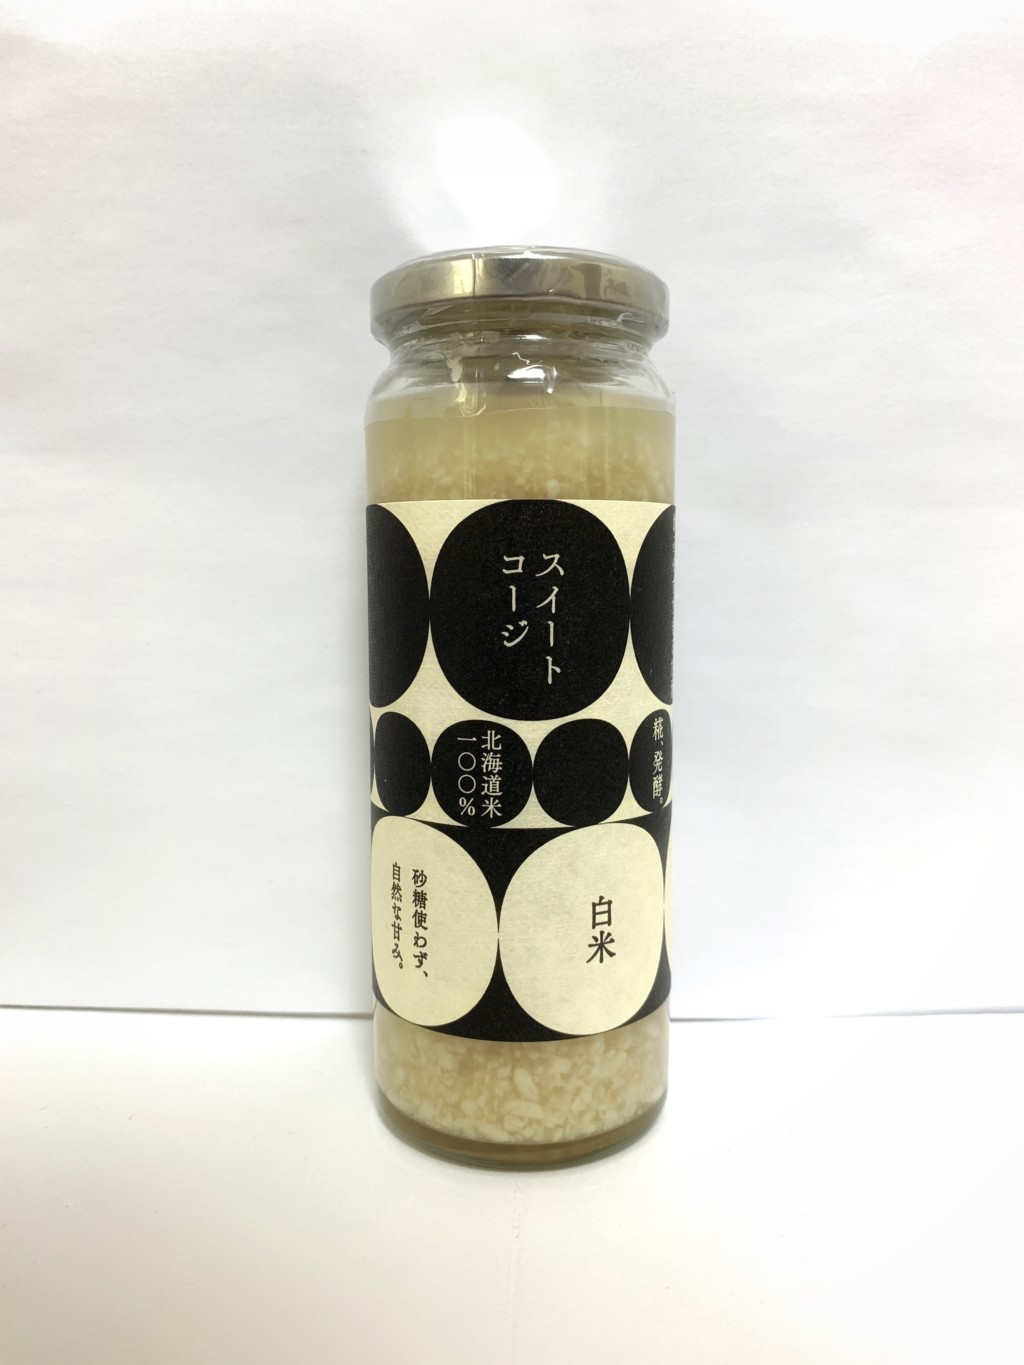 いとげん味噌工房の米麹甘酒『スイートコウジ-白米-』